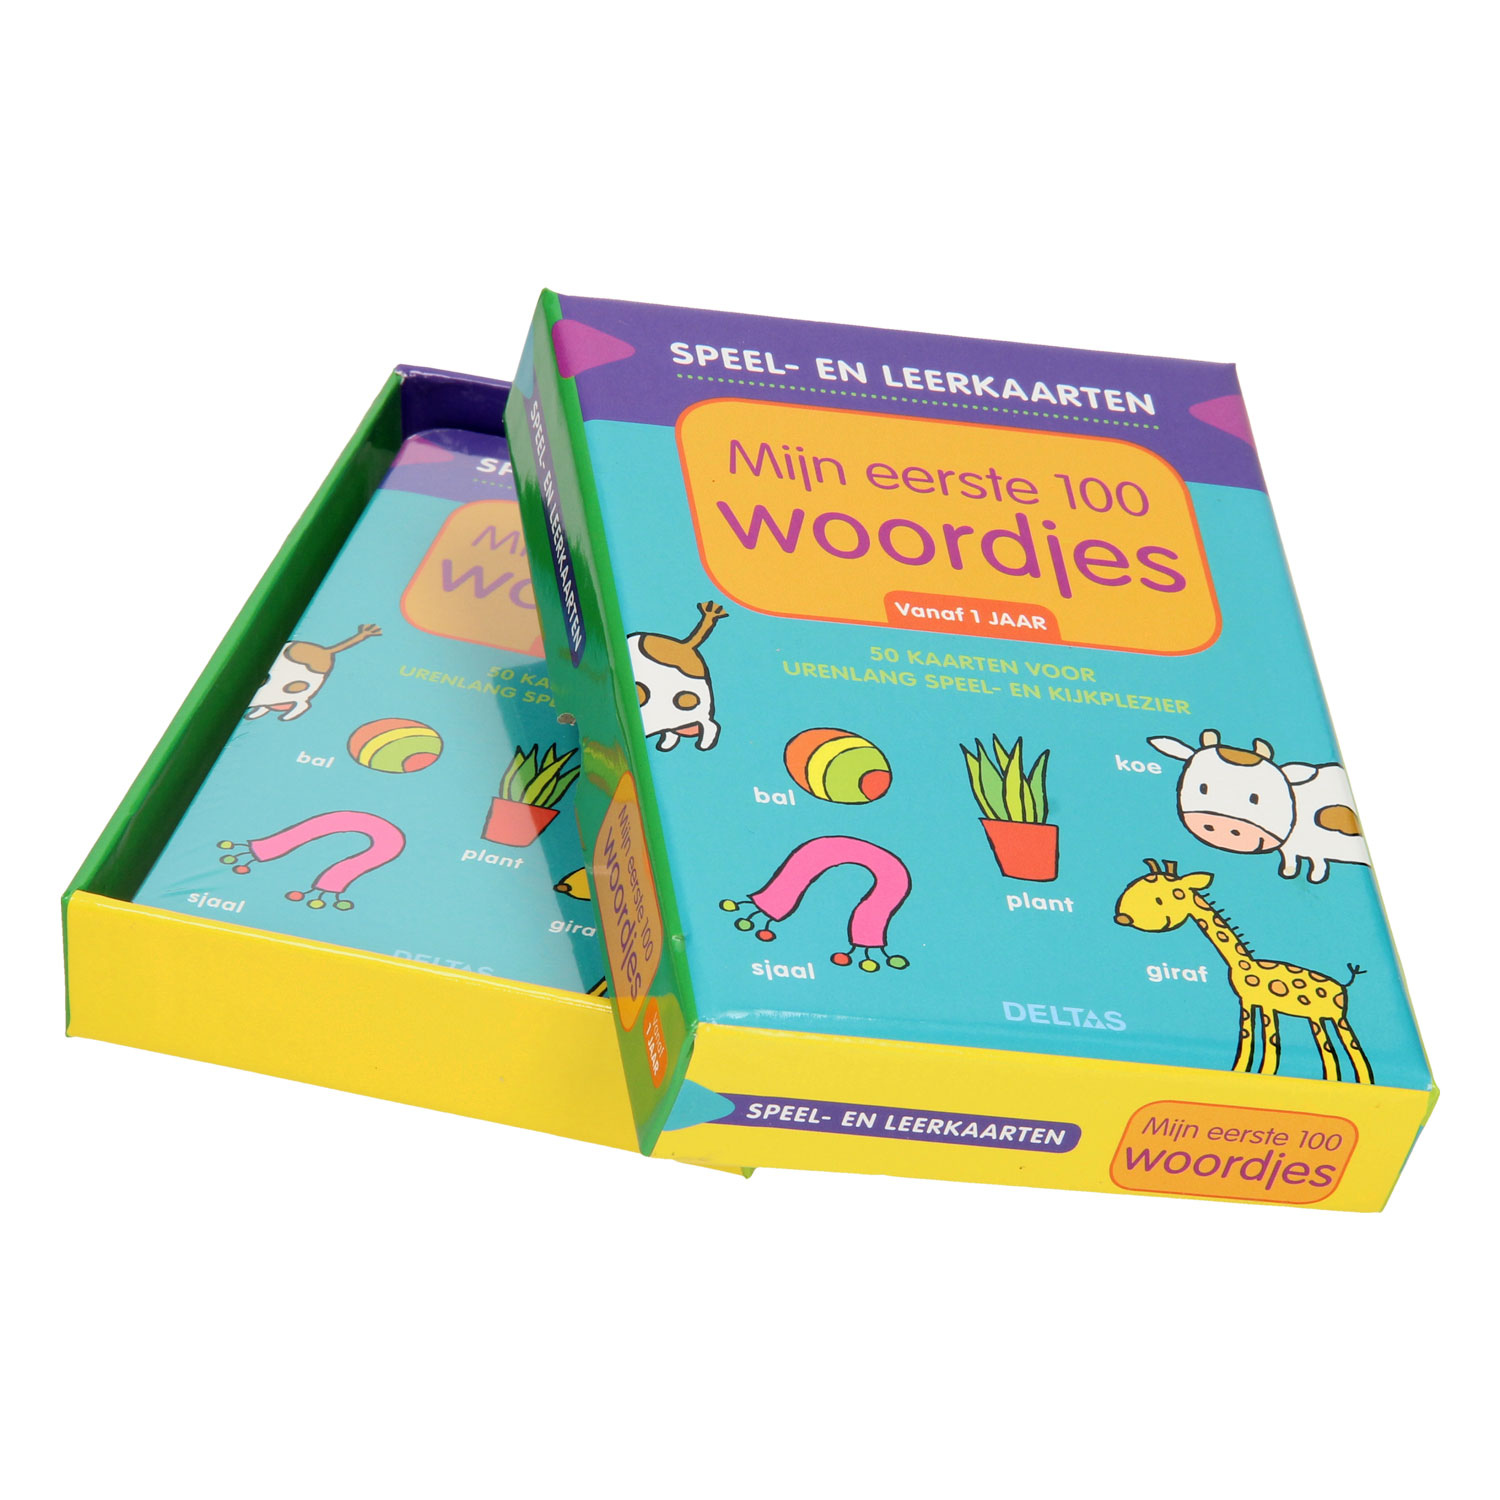 Speel- en leerkaarten - Mijn eerste 100 woordjes